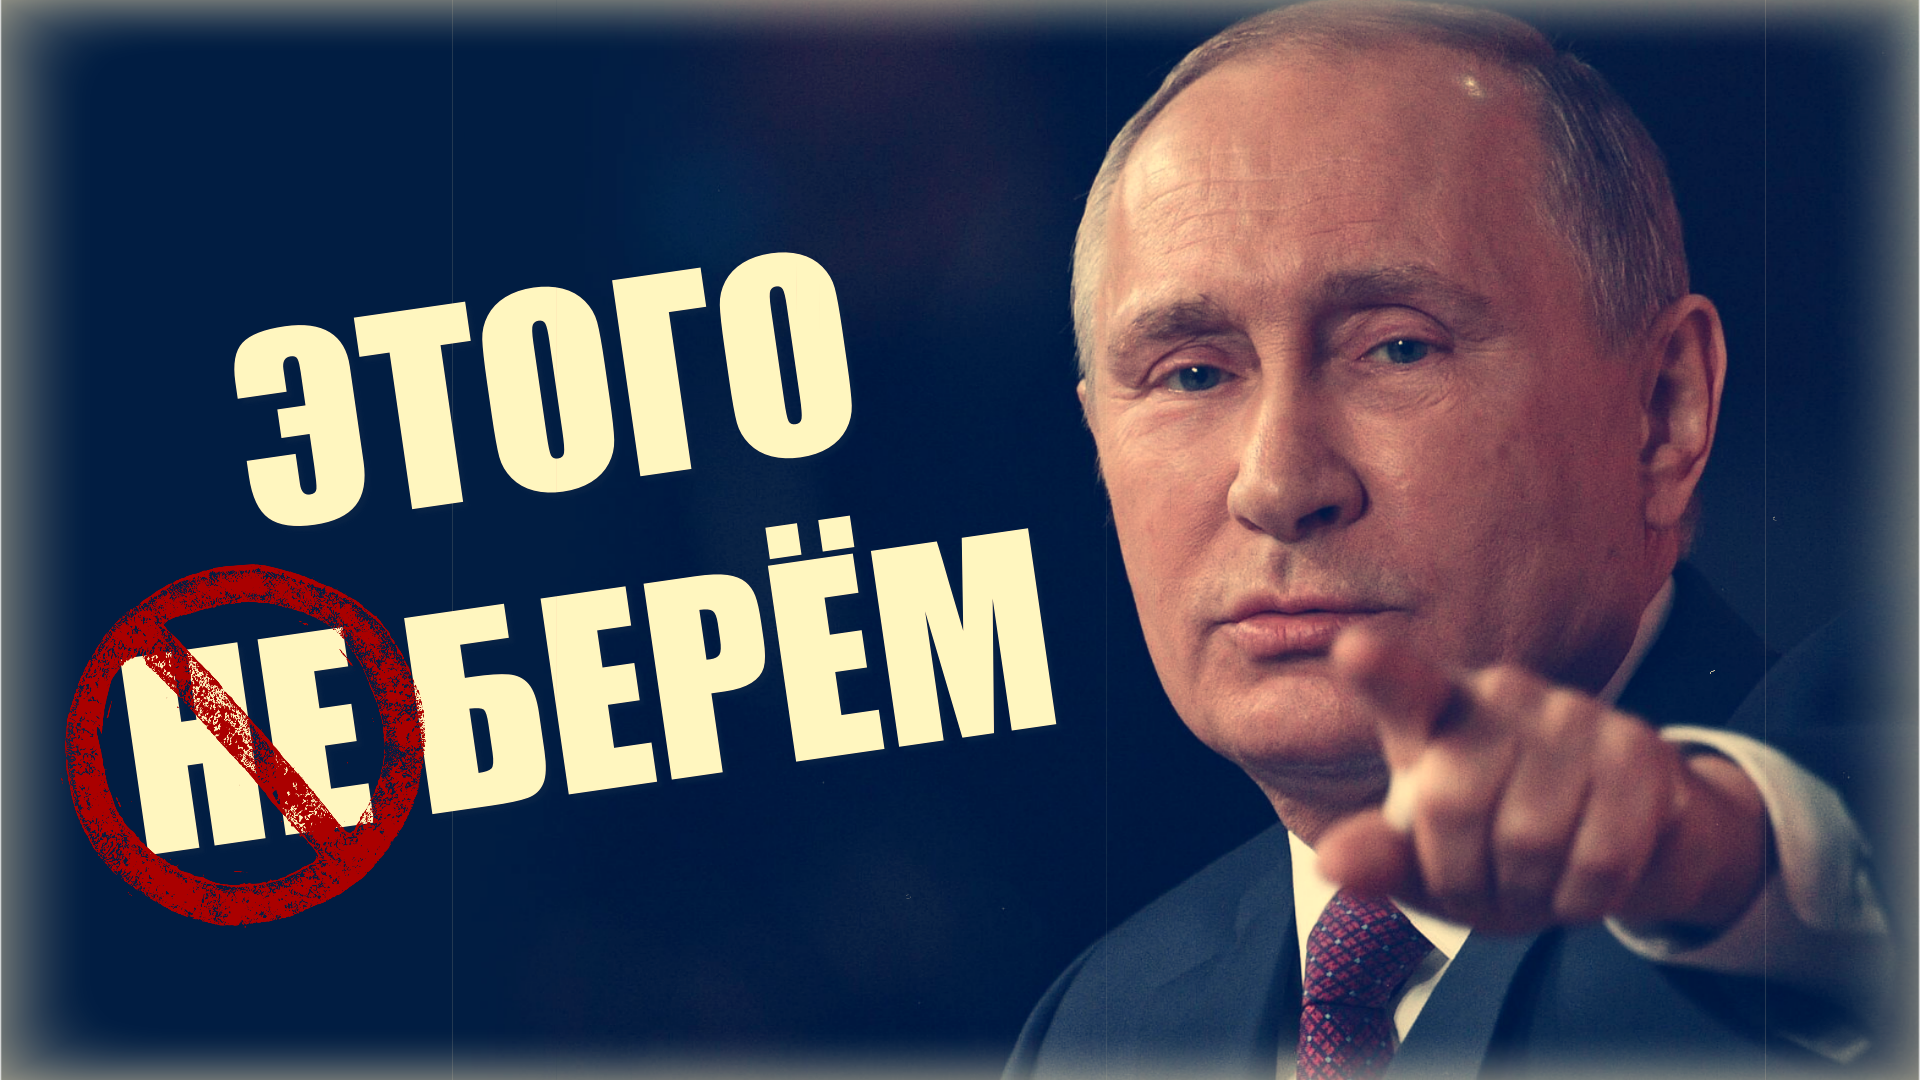 «Классная постановочная игра для всего мир!» Путин изящно и тонко троллит президента США Байдена